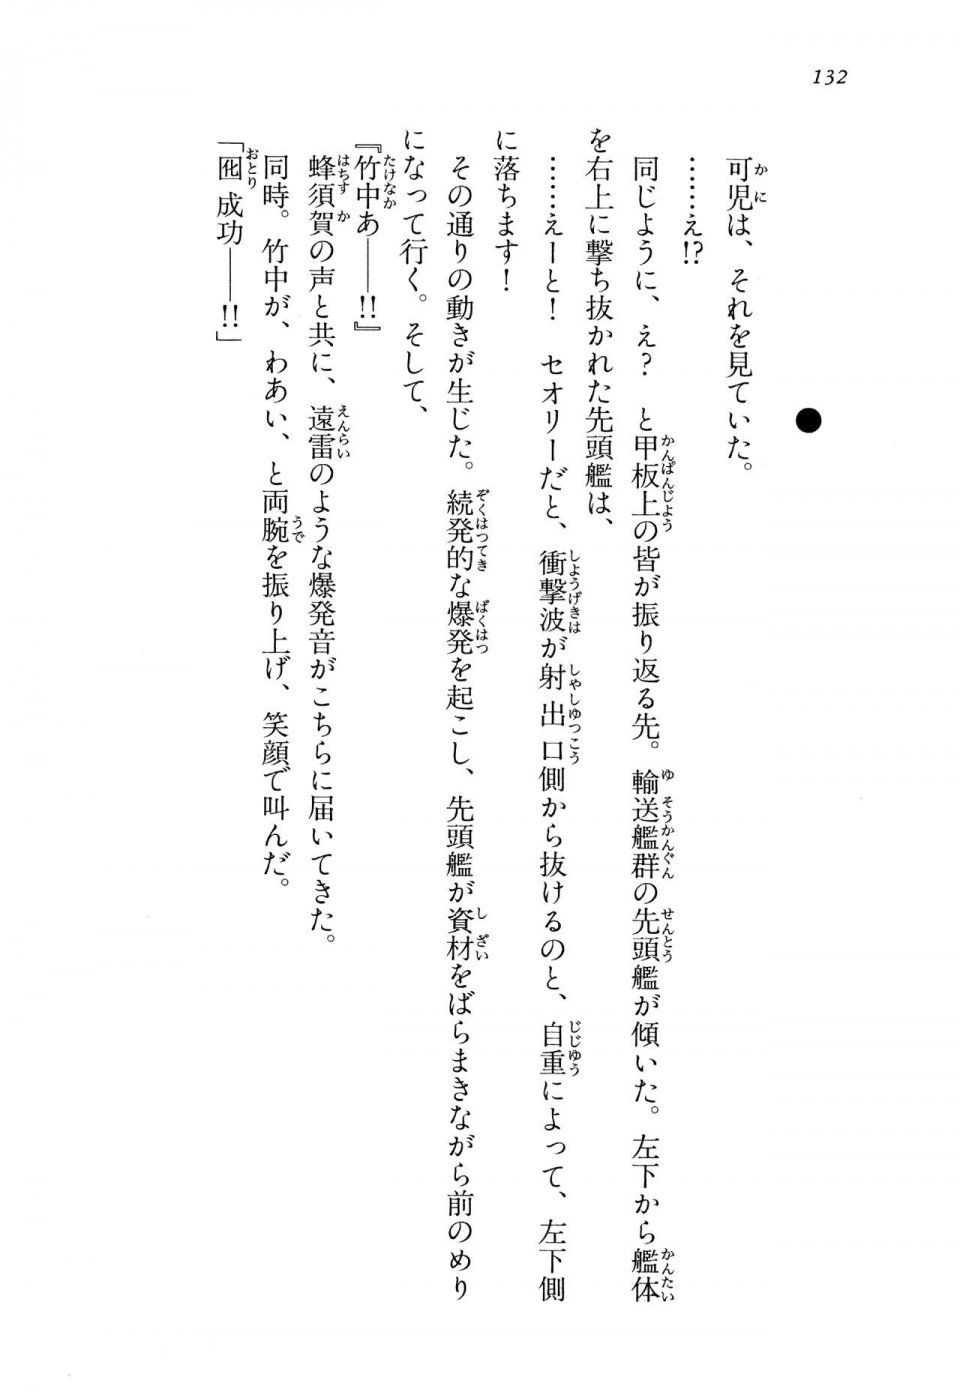 Kyoukai Senjou no Horizon LN Vol 13(6A) - Photo #132